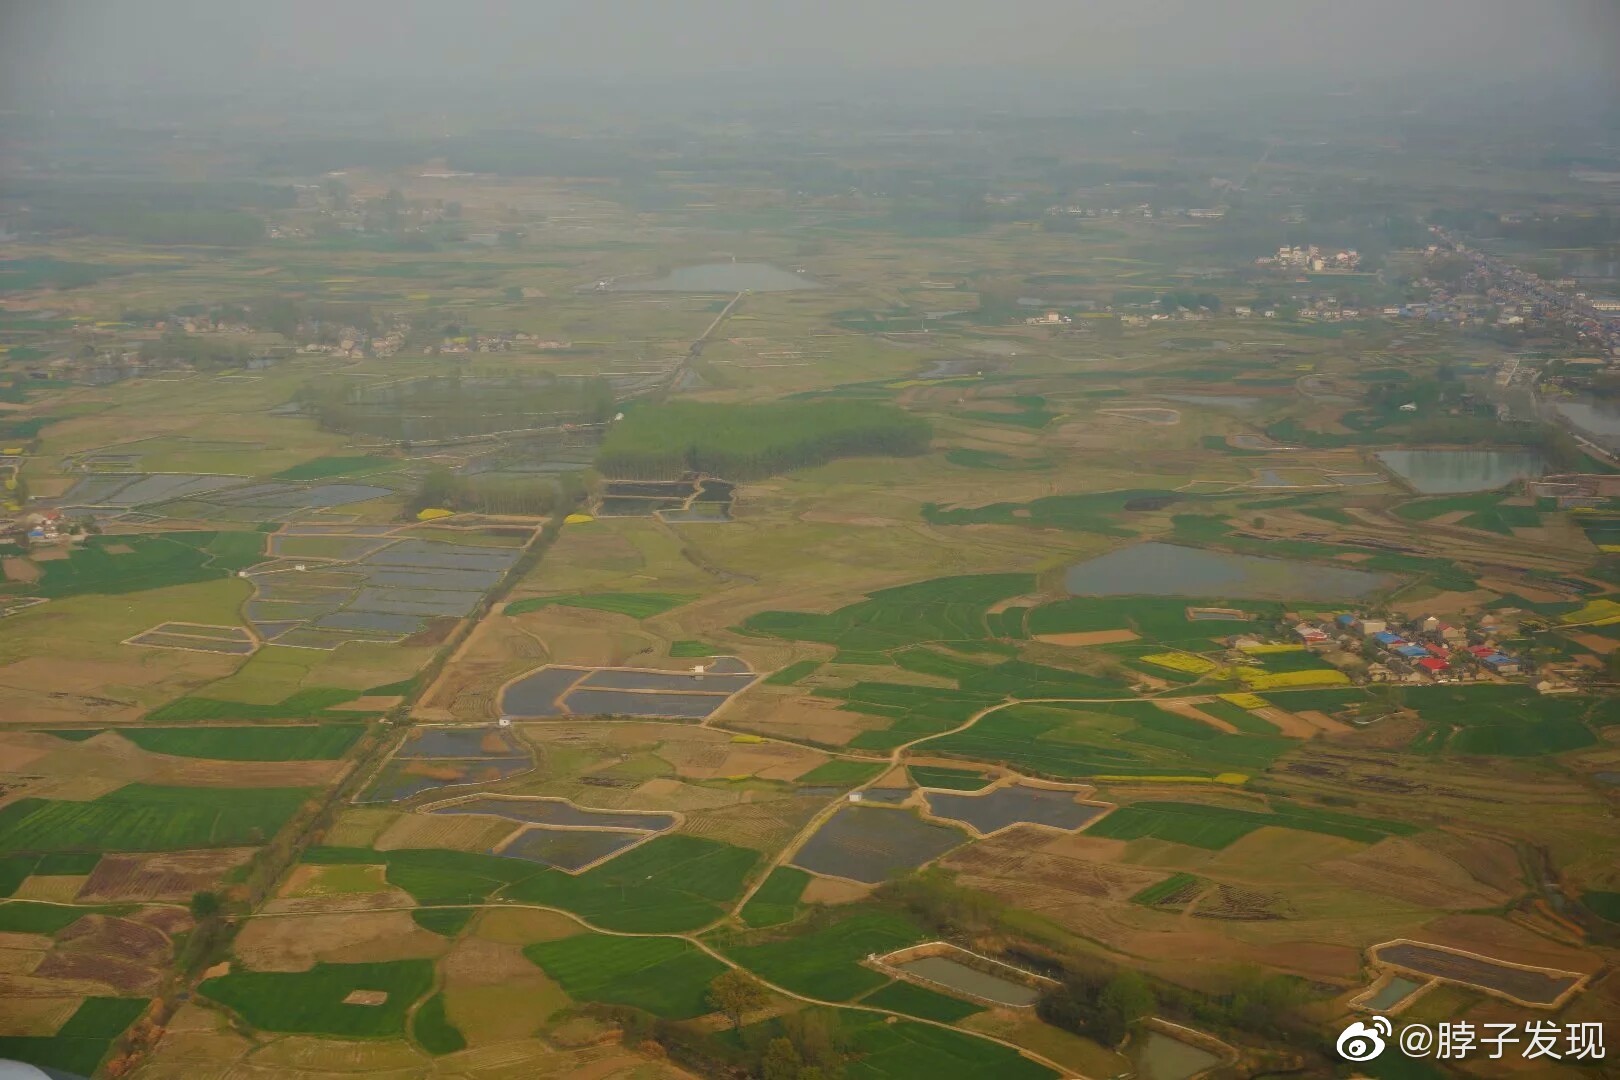 鸟瞰江淮平原，中国南北过渡区的春季风景